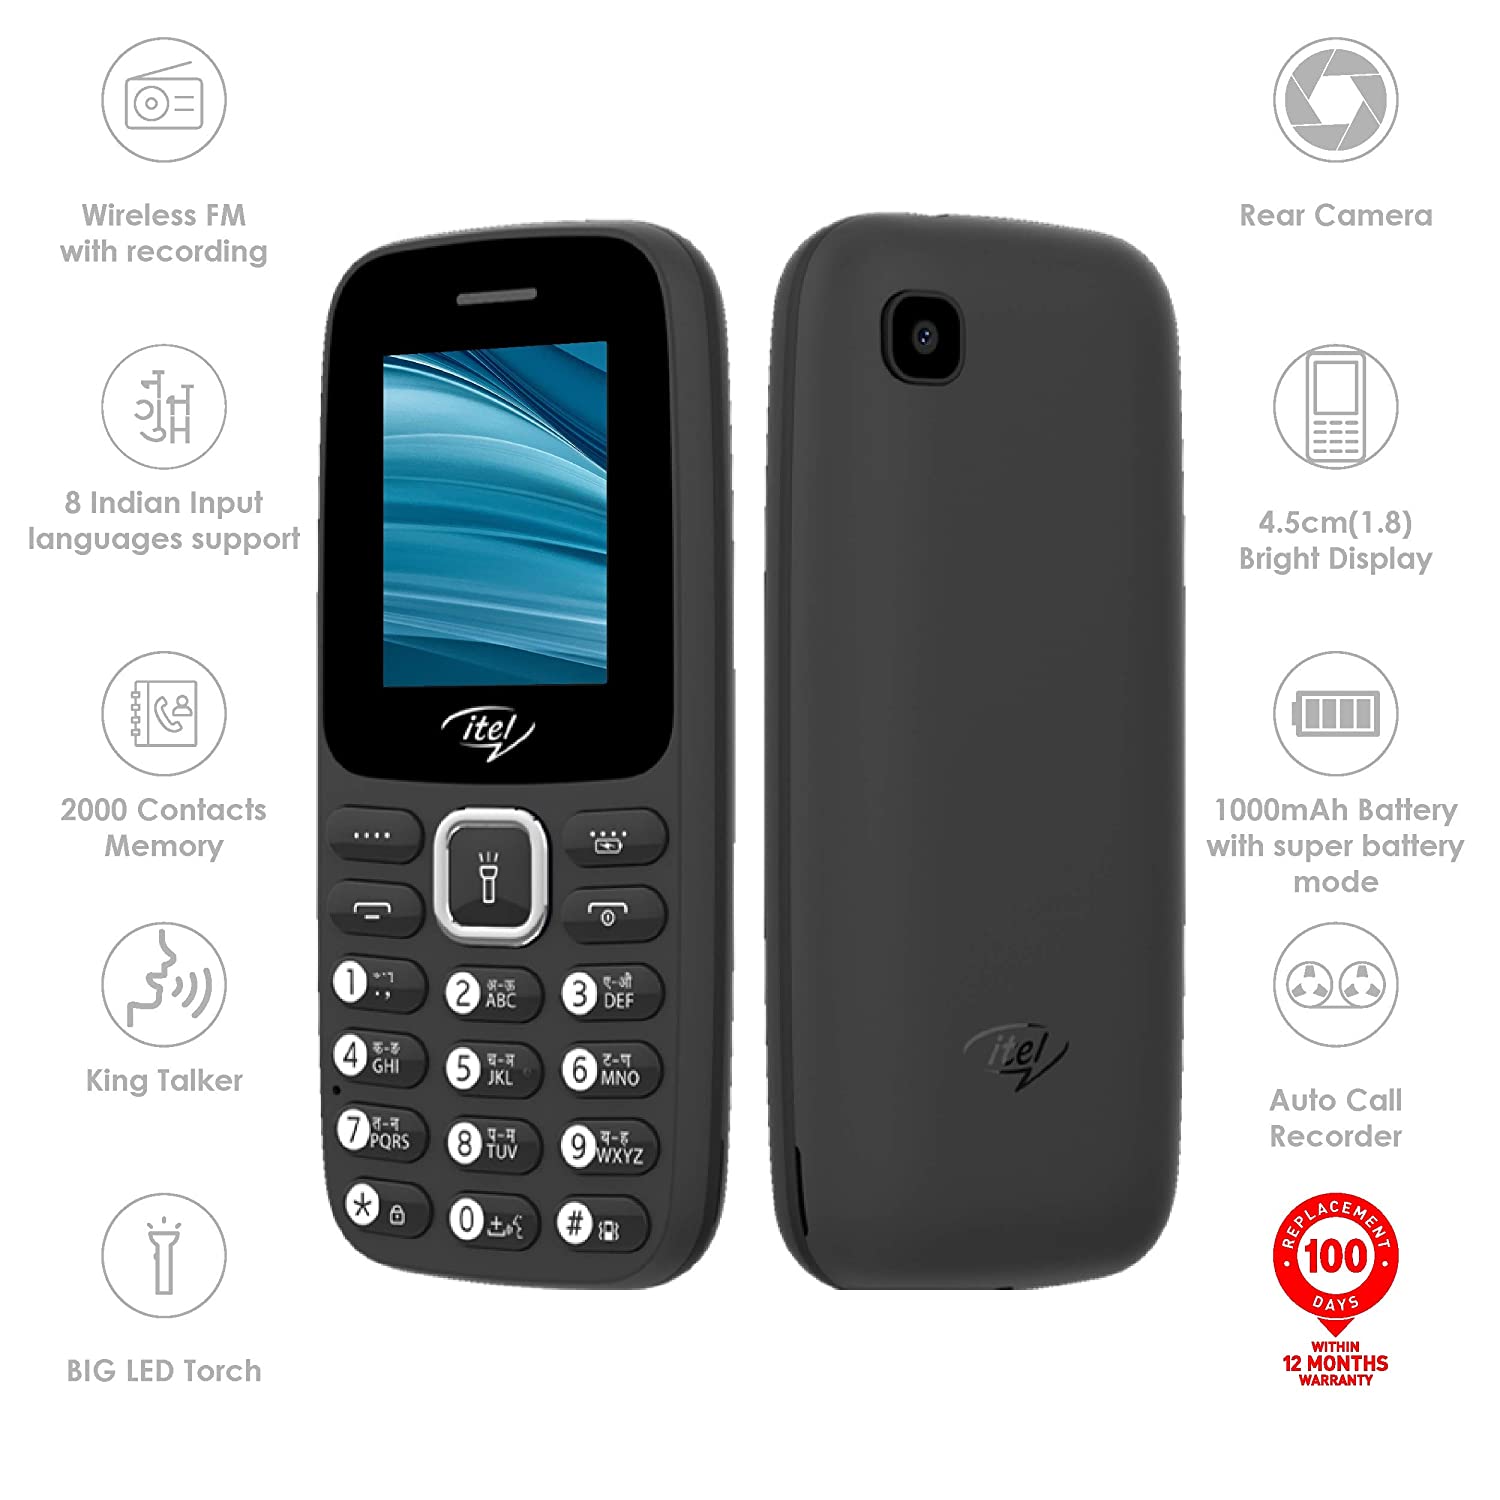 Itel It2173 Wireless FM, OperaMini, Torch, Dual SIM Phone, 45% OFF